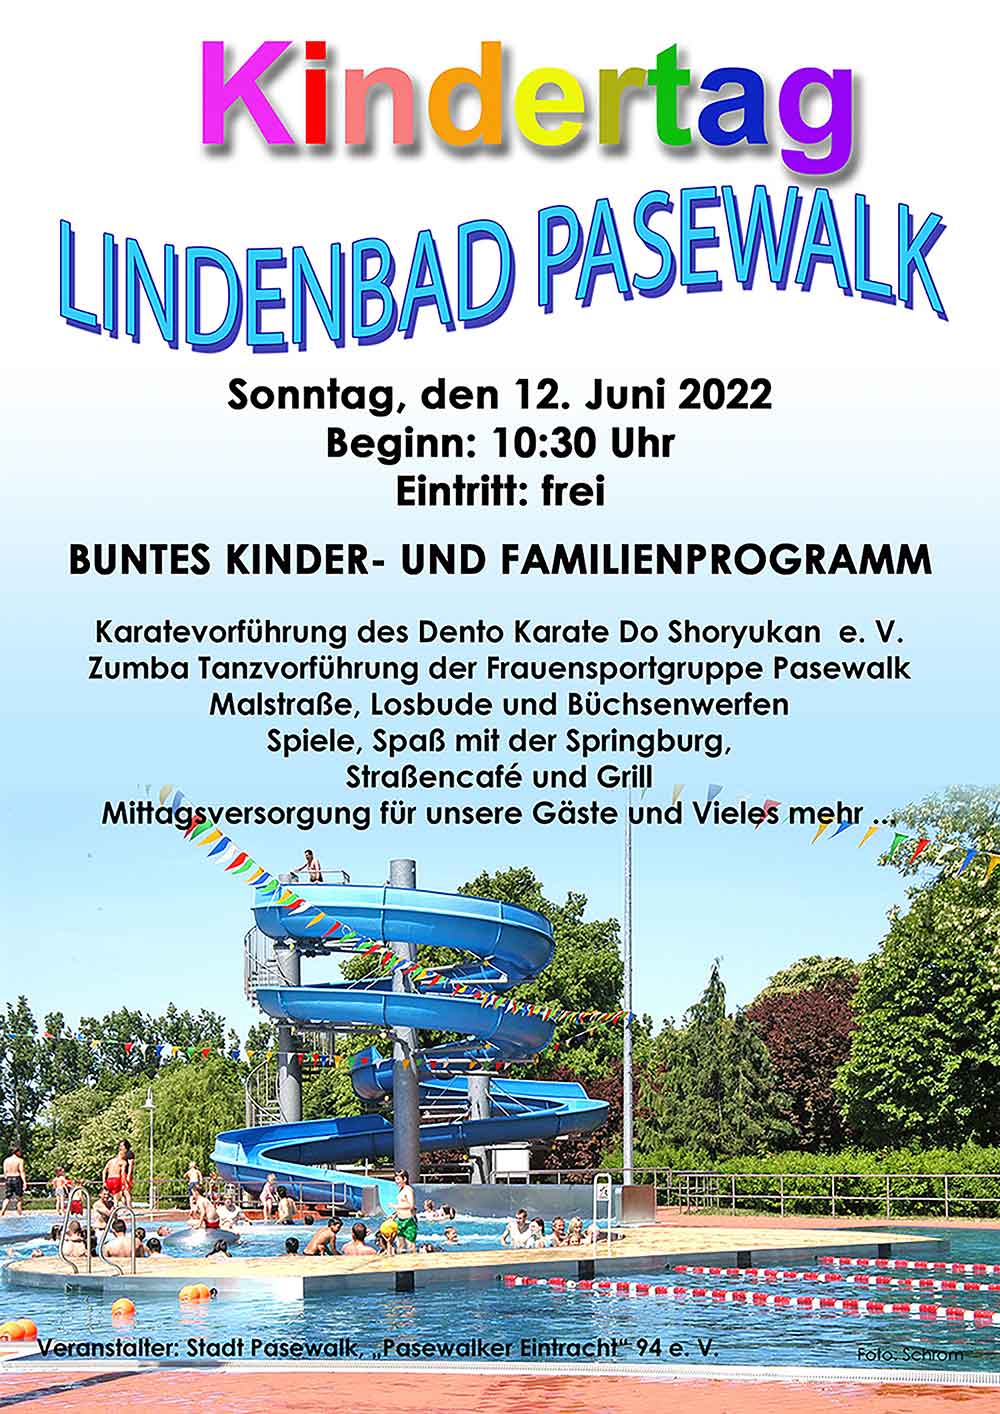 Pasewalk: Buntes Kinder- und Familienfest im Lindenbadadminam 2. Jun 2022 um 08:38 Uecker Randow